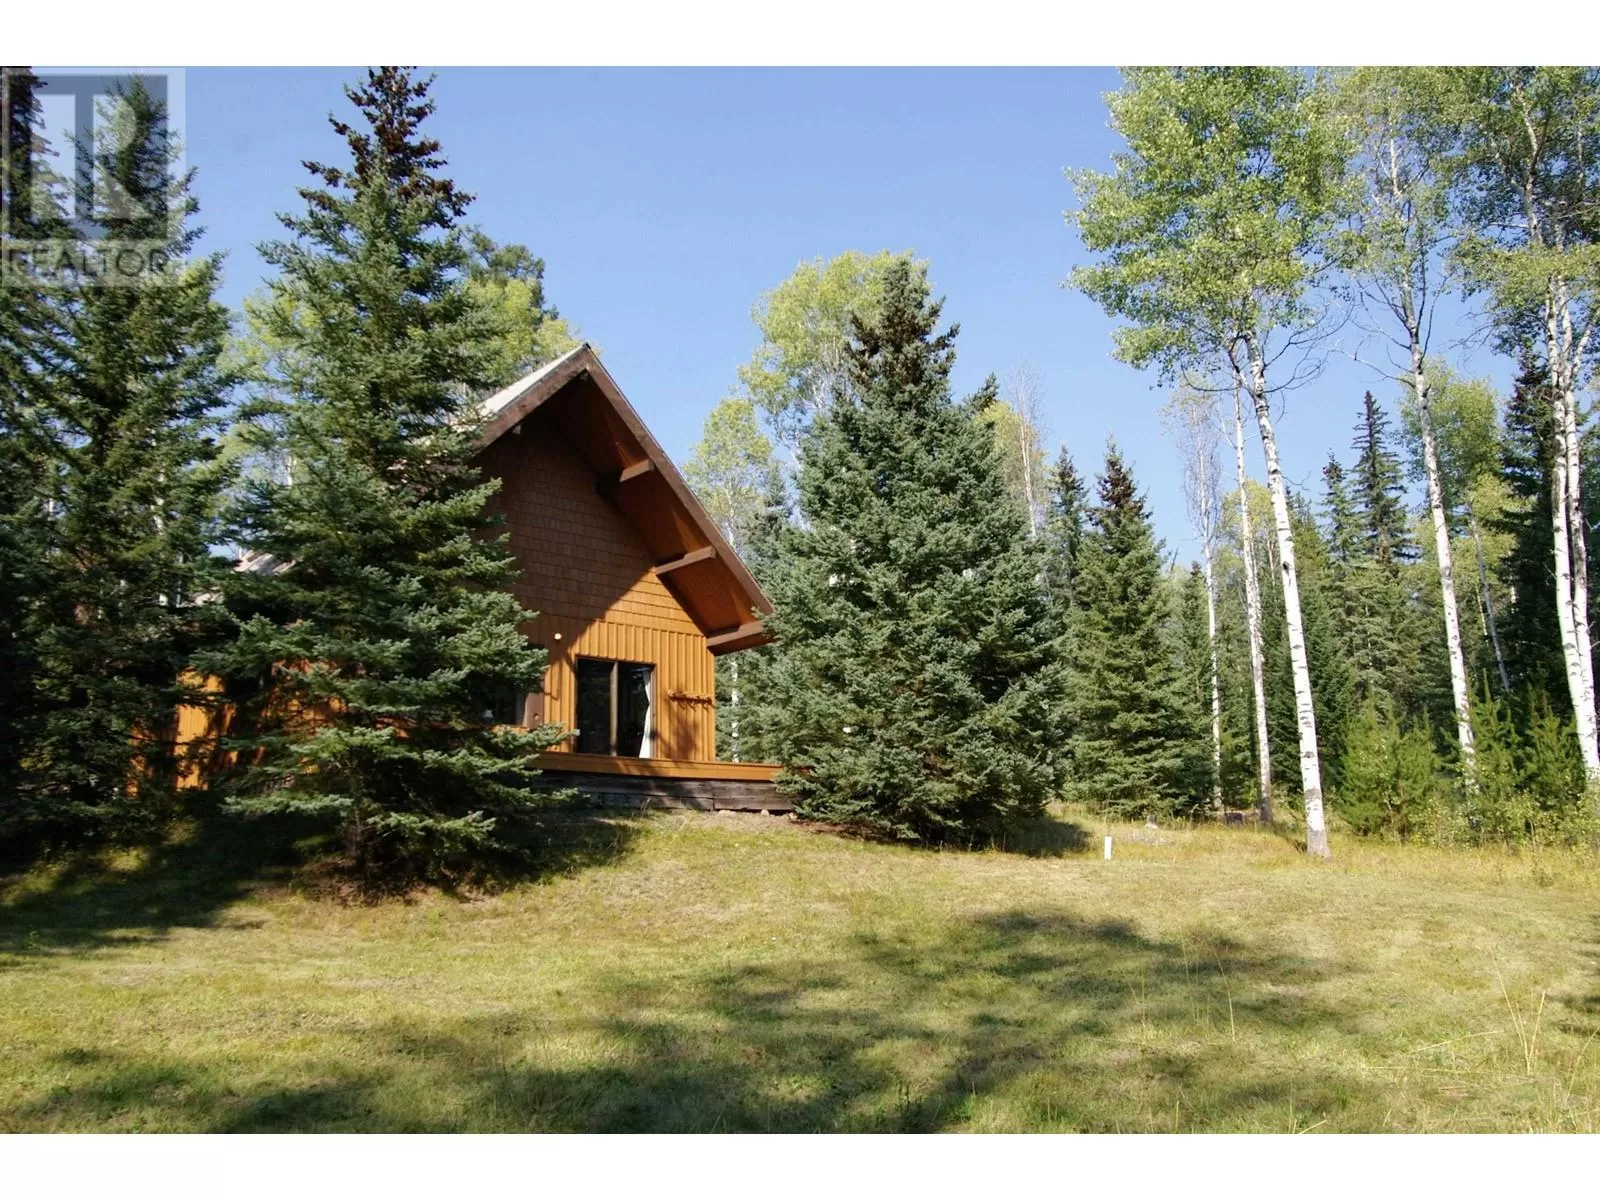 House for rent: 8950 Eagan Lake Road, Bridge Lake, British Columbia V0K 1E0